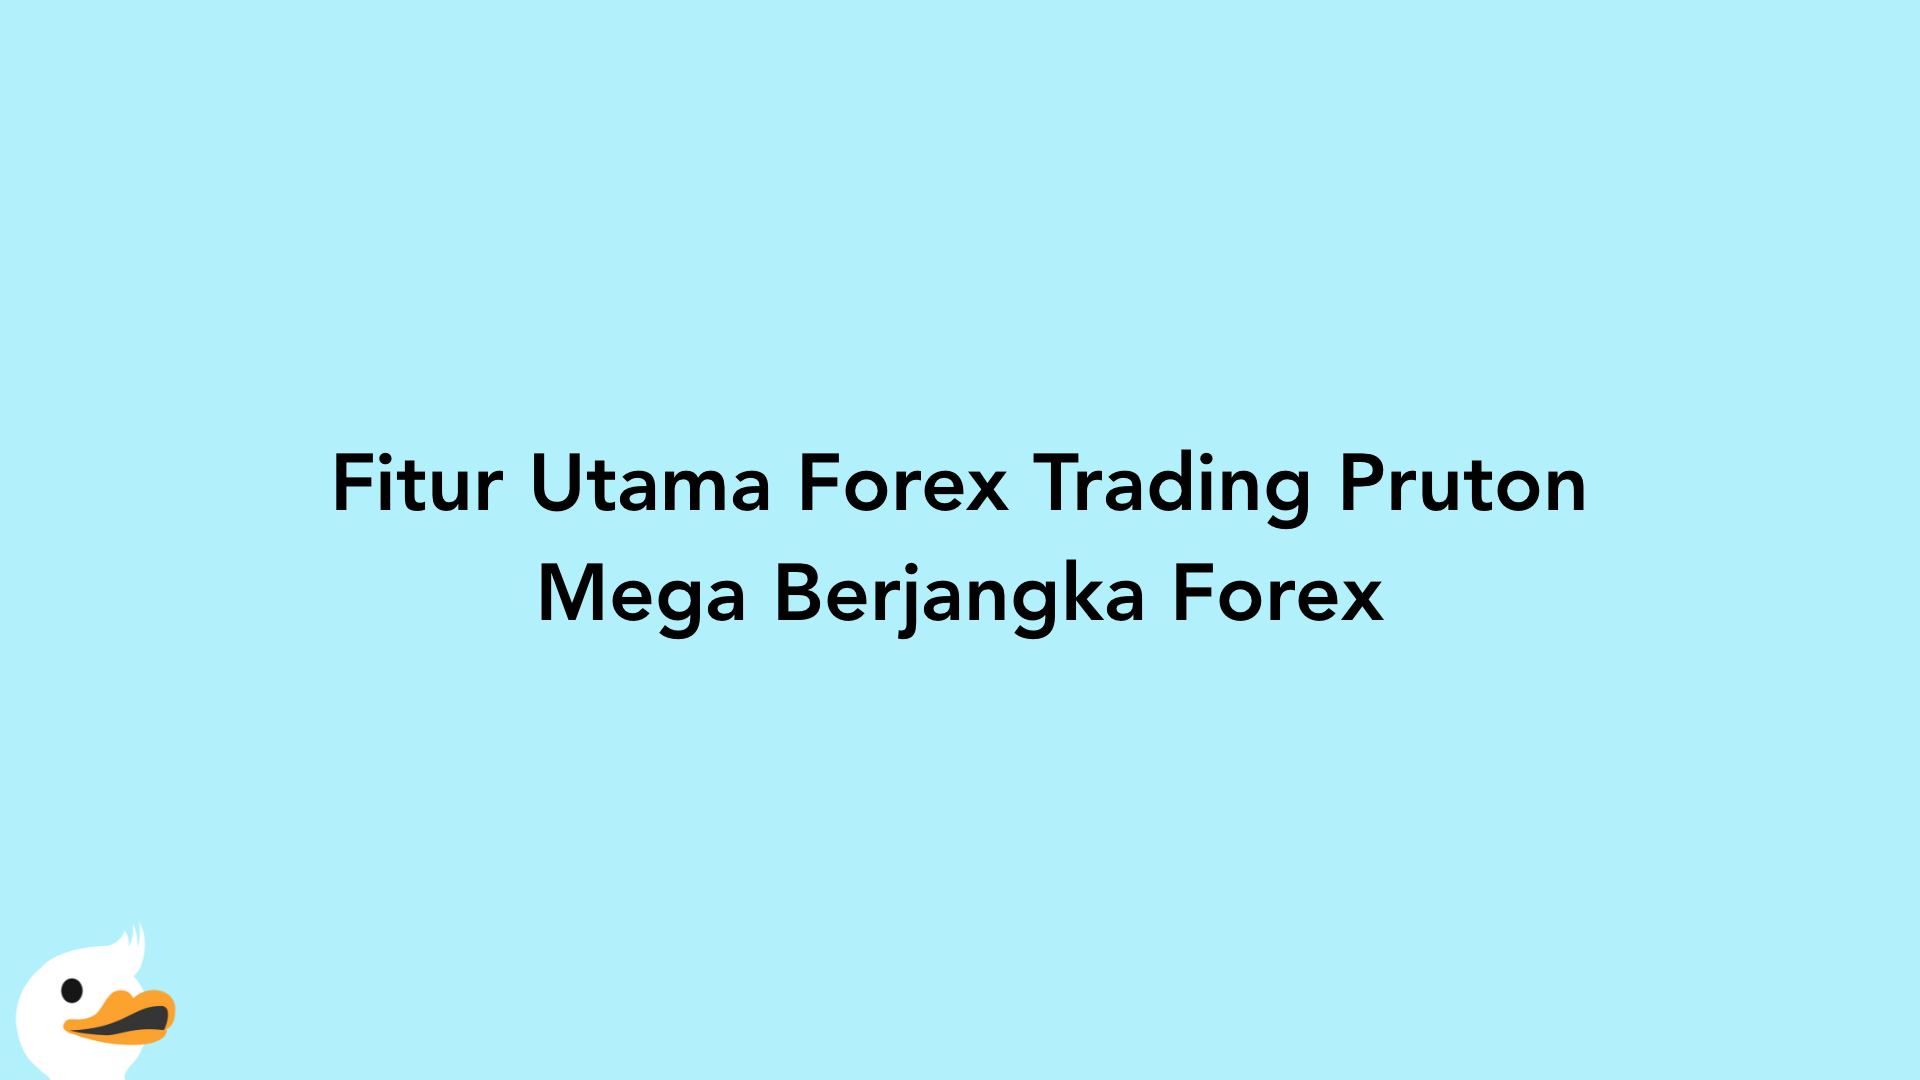 Fitur Utama Forex Trading Pruton Mega Berjangka Forex